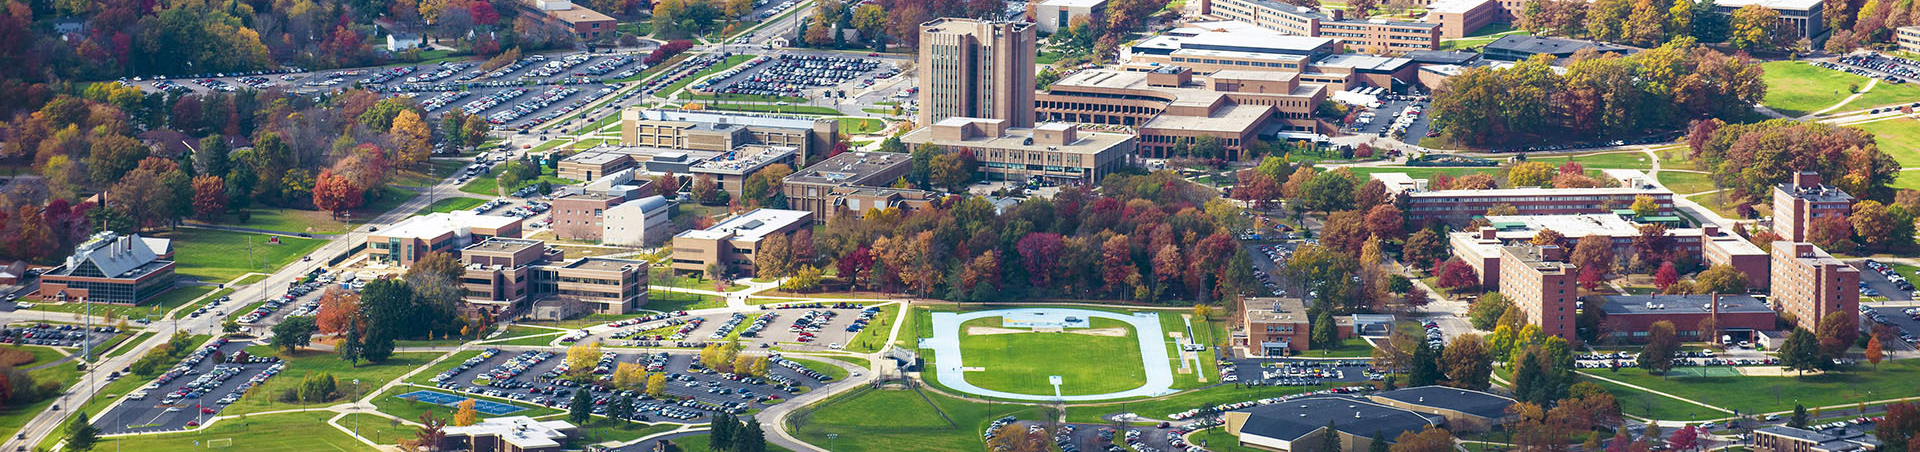 Kent State University Campus